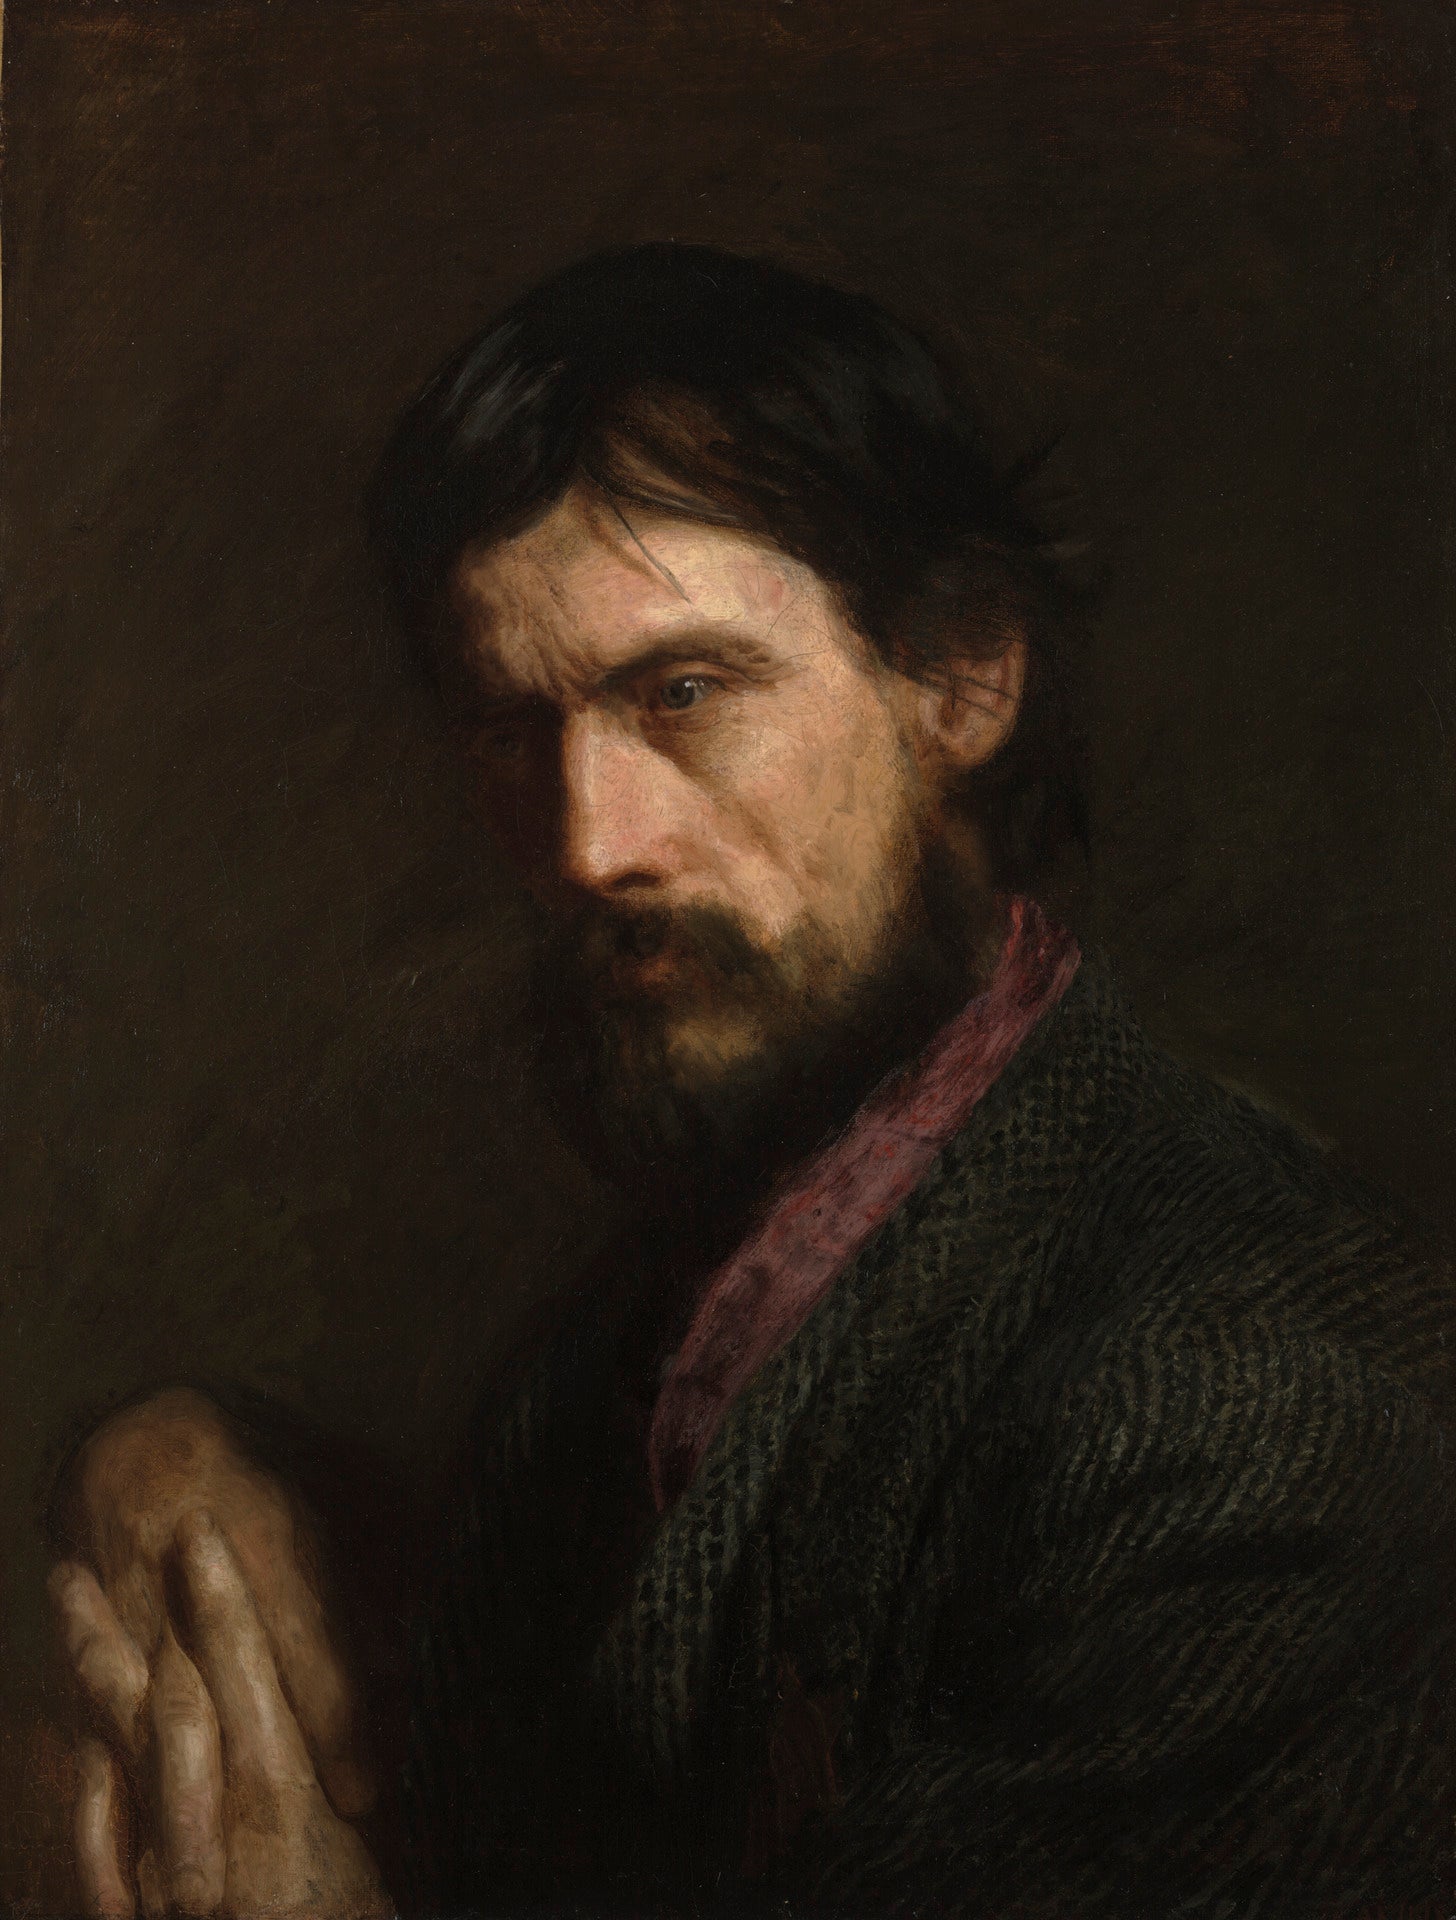 Le portrait d'ancien combattant de George Reynolds - Thomas Eakins